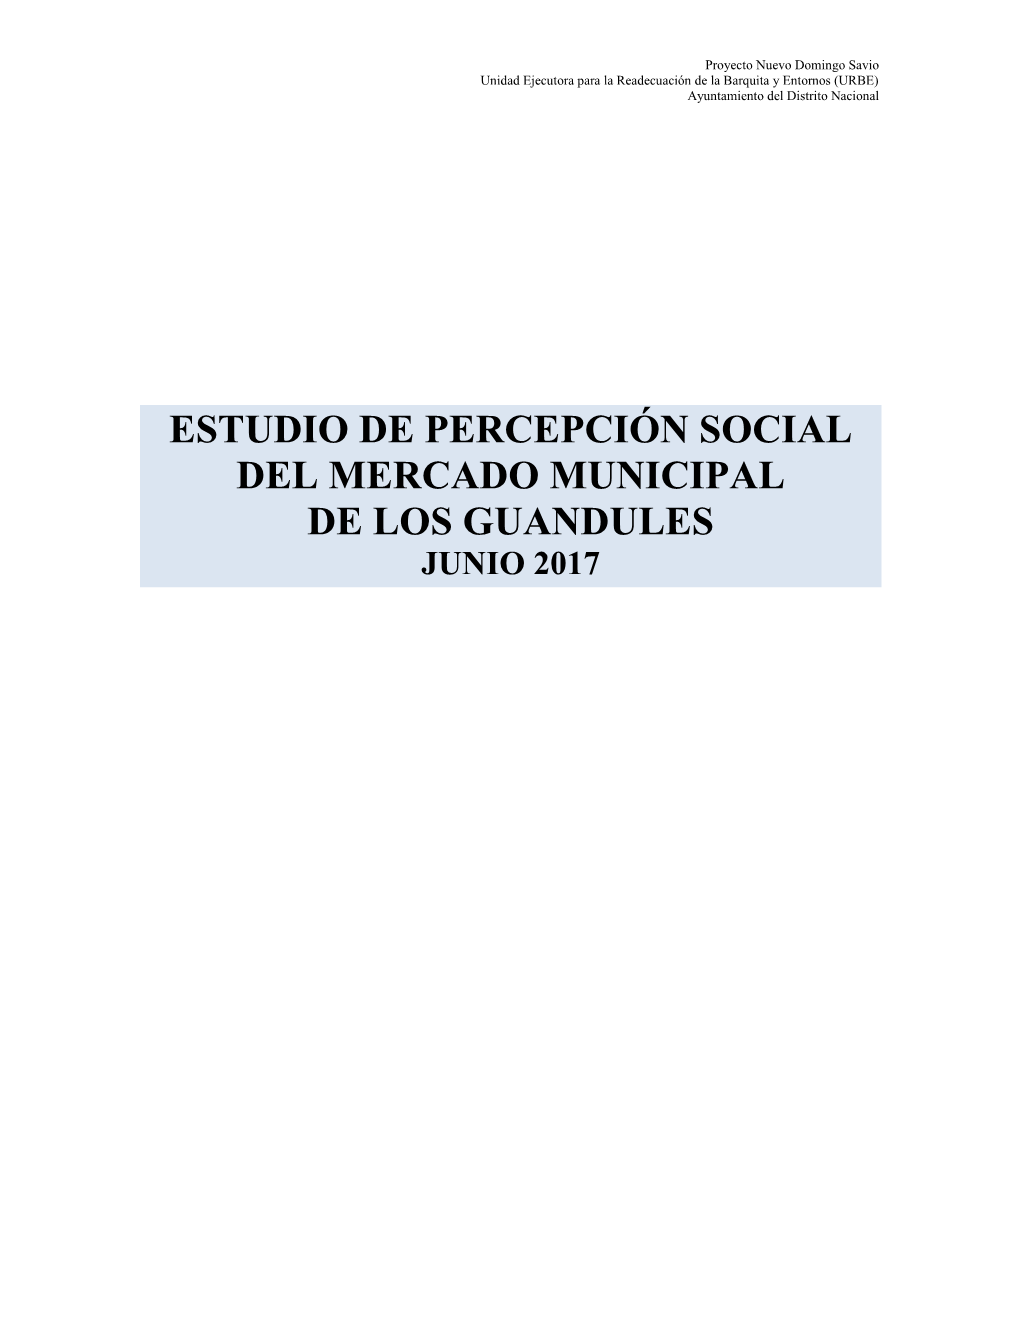 Estudio De Percepción Social Del Mercado Municipal De Los Guandules Junio 2017